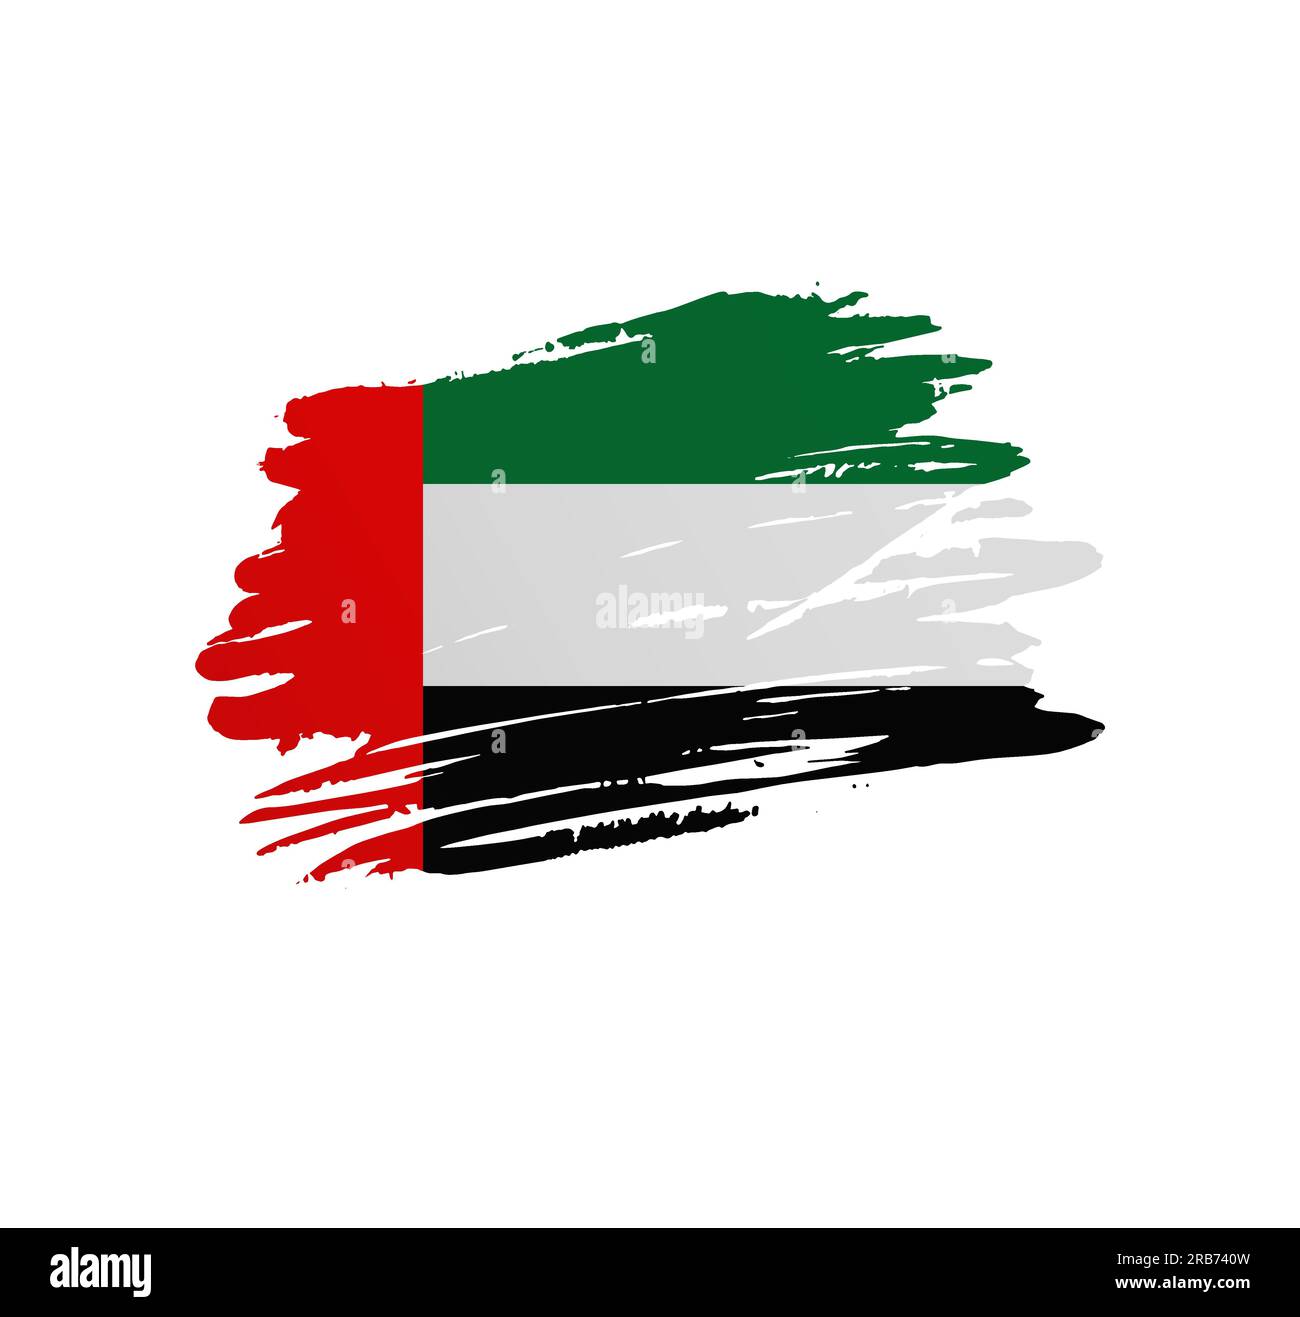 United arab emirates set detailed country shape Vector Image